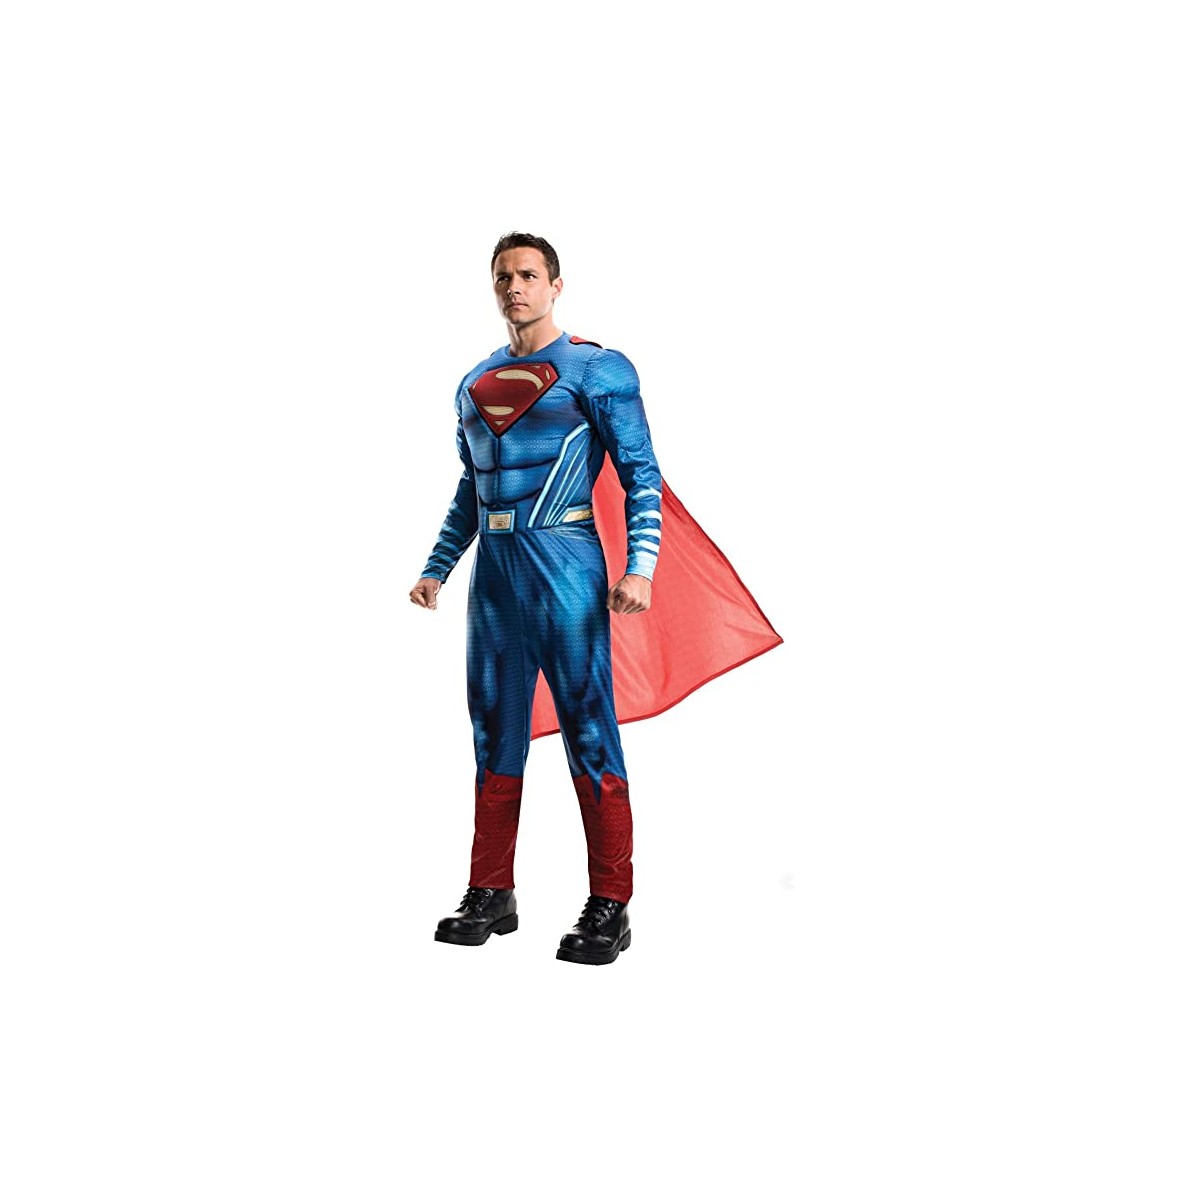 Costume Superman della Justice League, per adulti